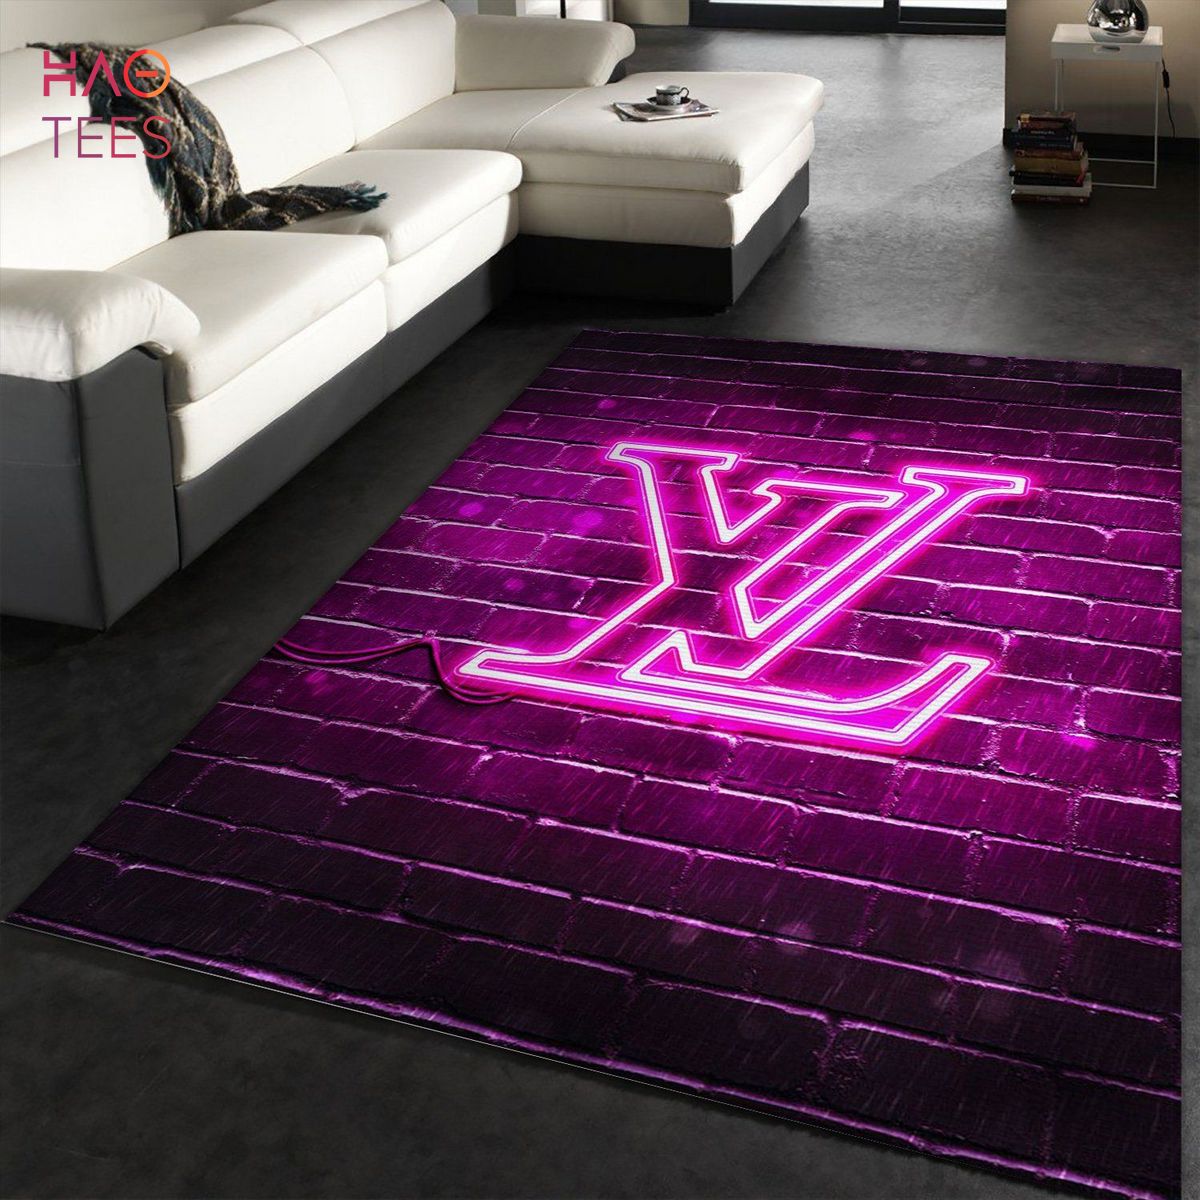 BEST Louis Vuitton Neon Rug Bedroom Rug Floor Decor Home Decor